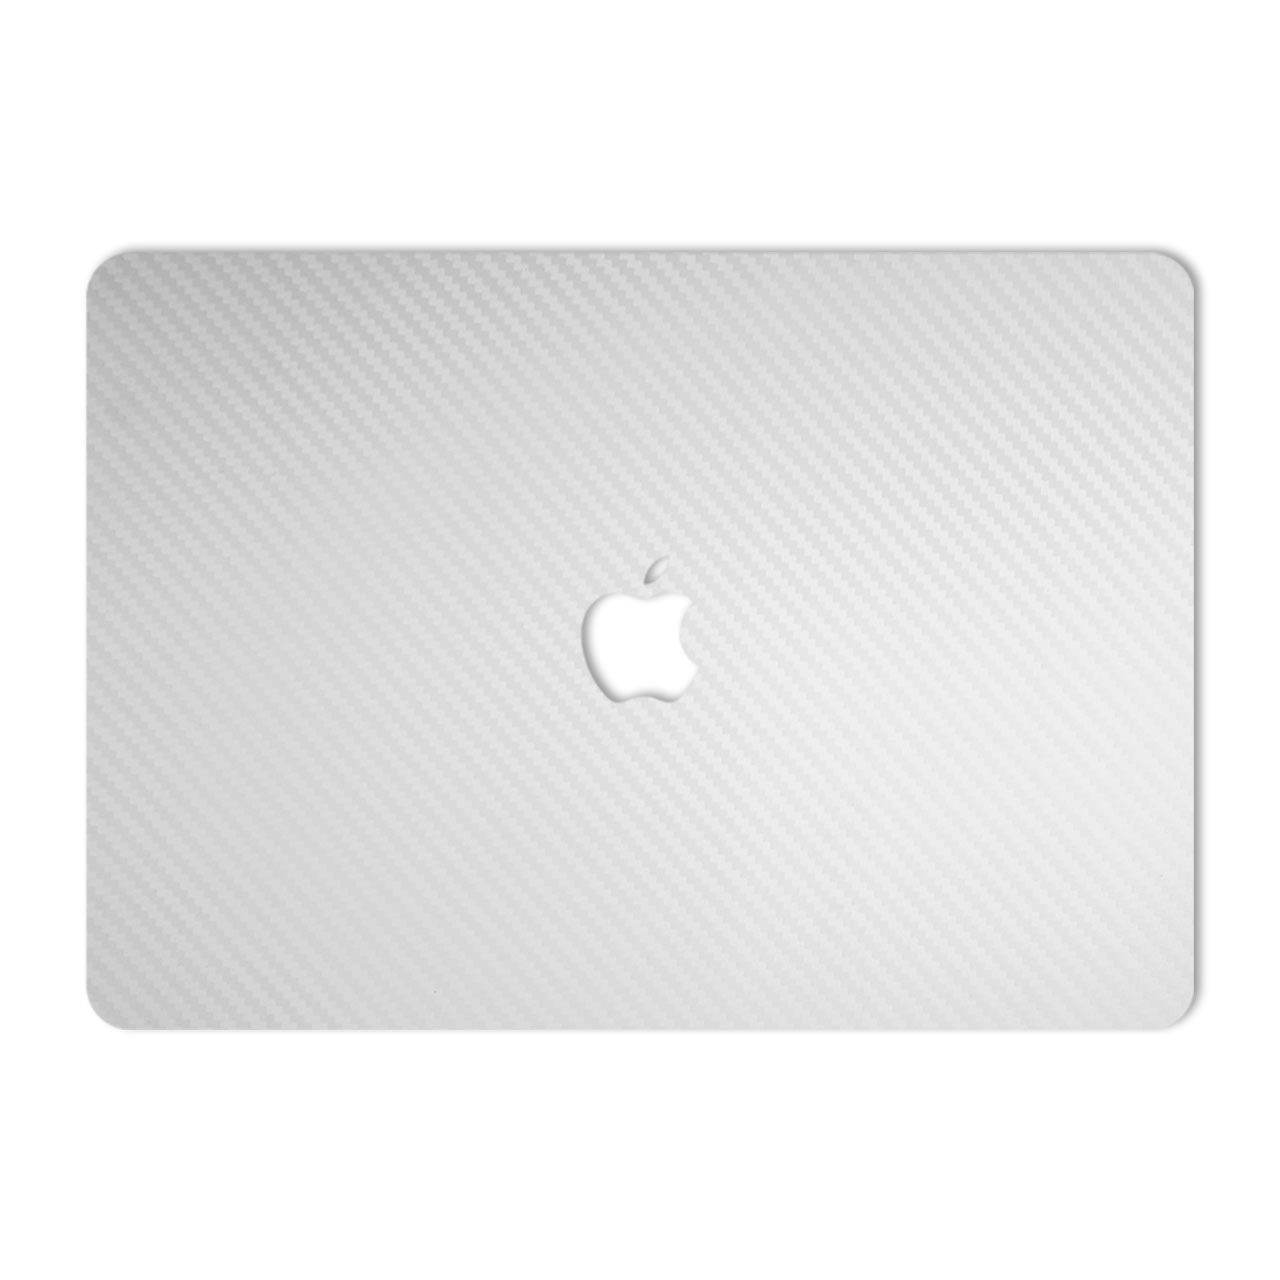 برچسب پوششی ماهوت مدل White Carbon مناسب برای لپ تاپ Macbook 12inch Retina